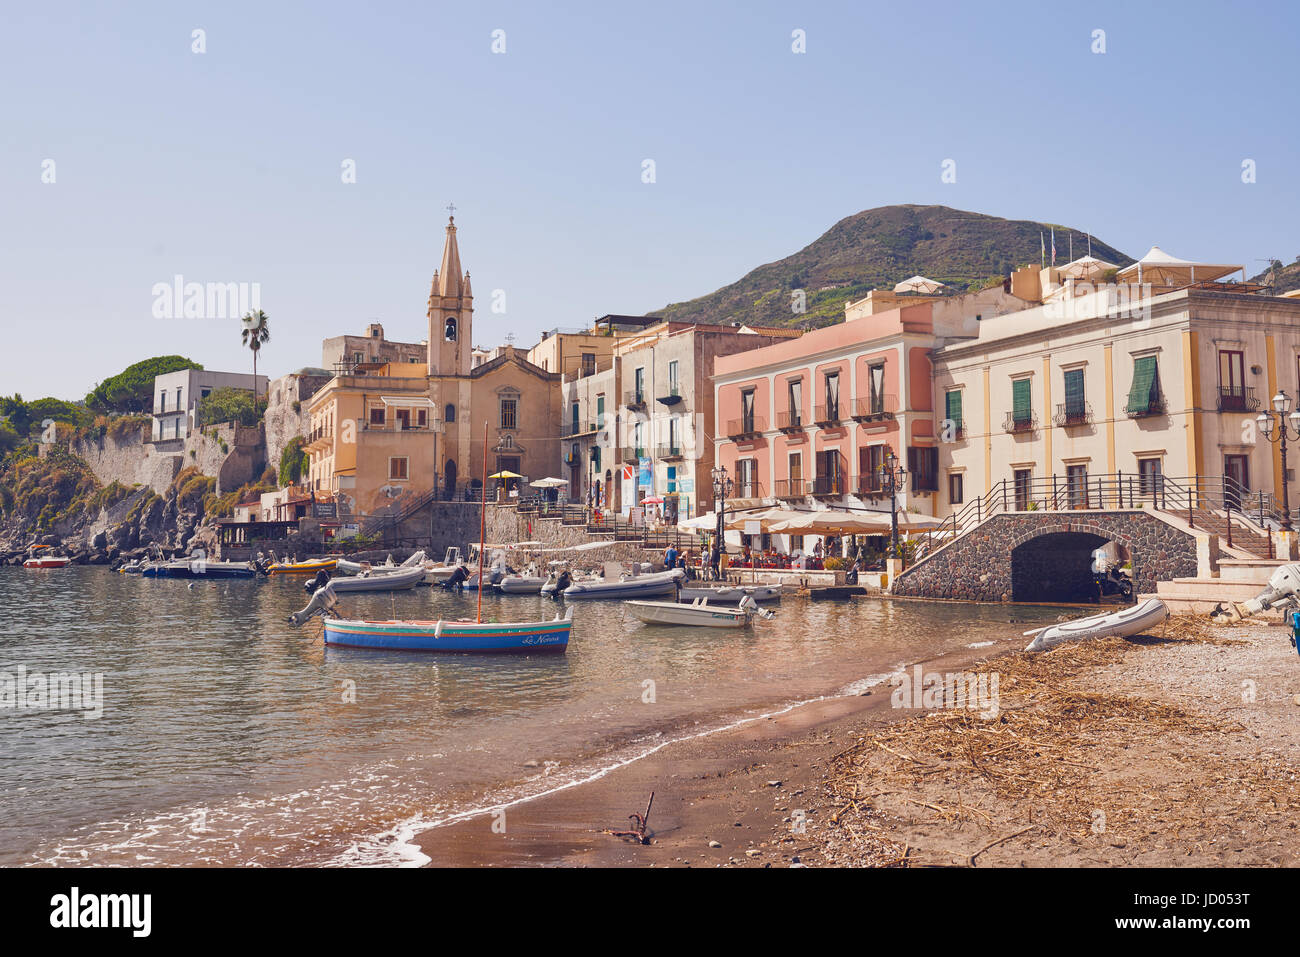 Äolischen Inseln - Lipari - Sizilien - Hafen, Kirche im Hintergrund Stockfoto